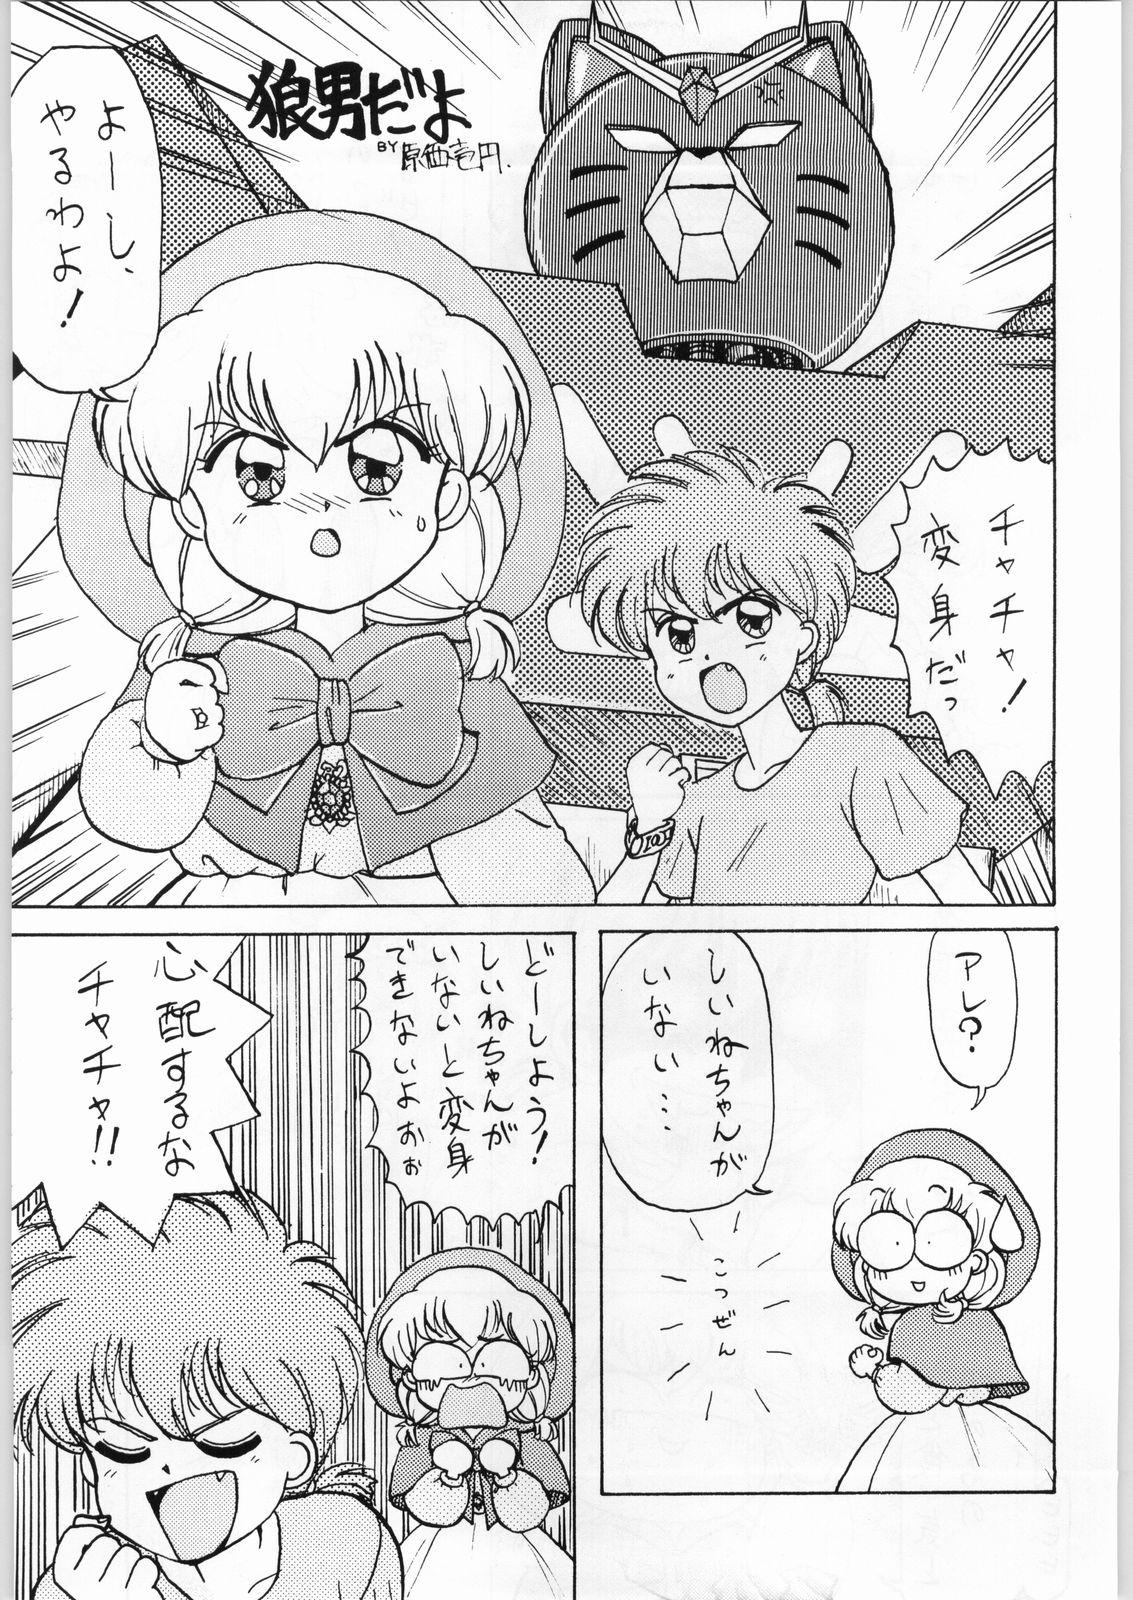 Big Boobs Dance of Princess 3 - Sailor moon Tenchi muyo Akazukin cha cha Minky momo Ng knight lamune and 40 Asslicking - Page 6